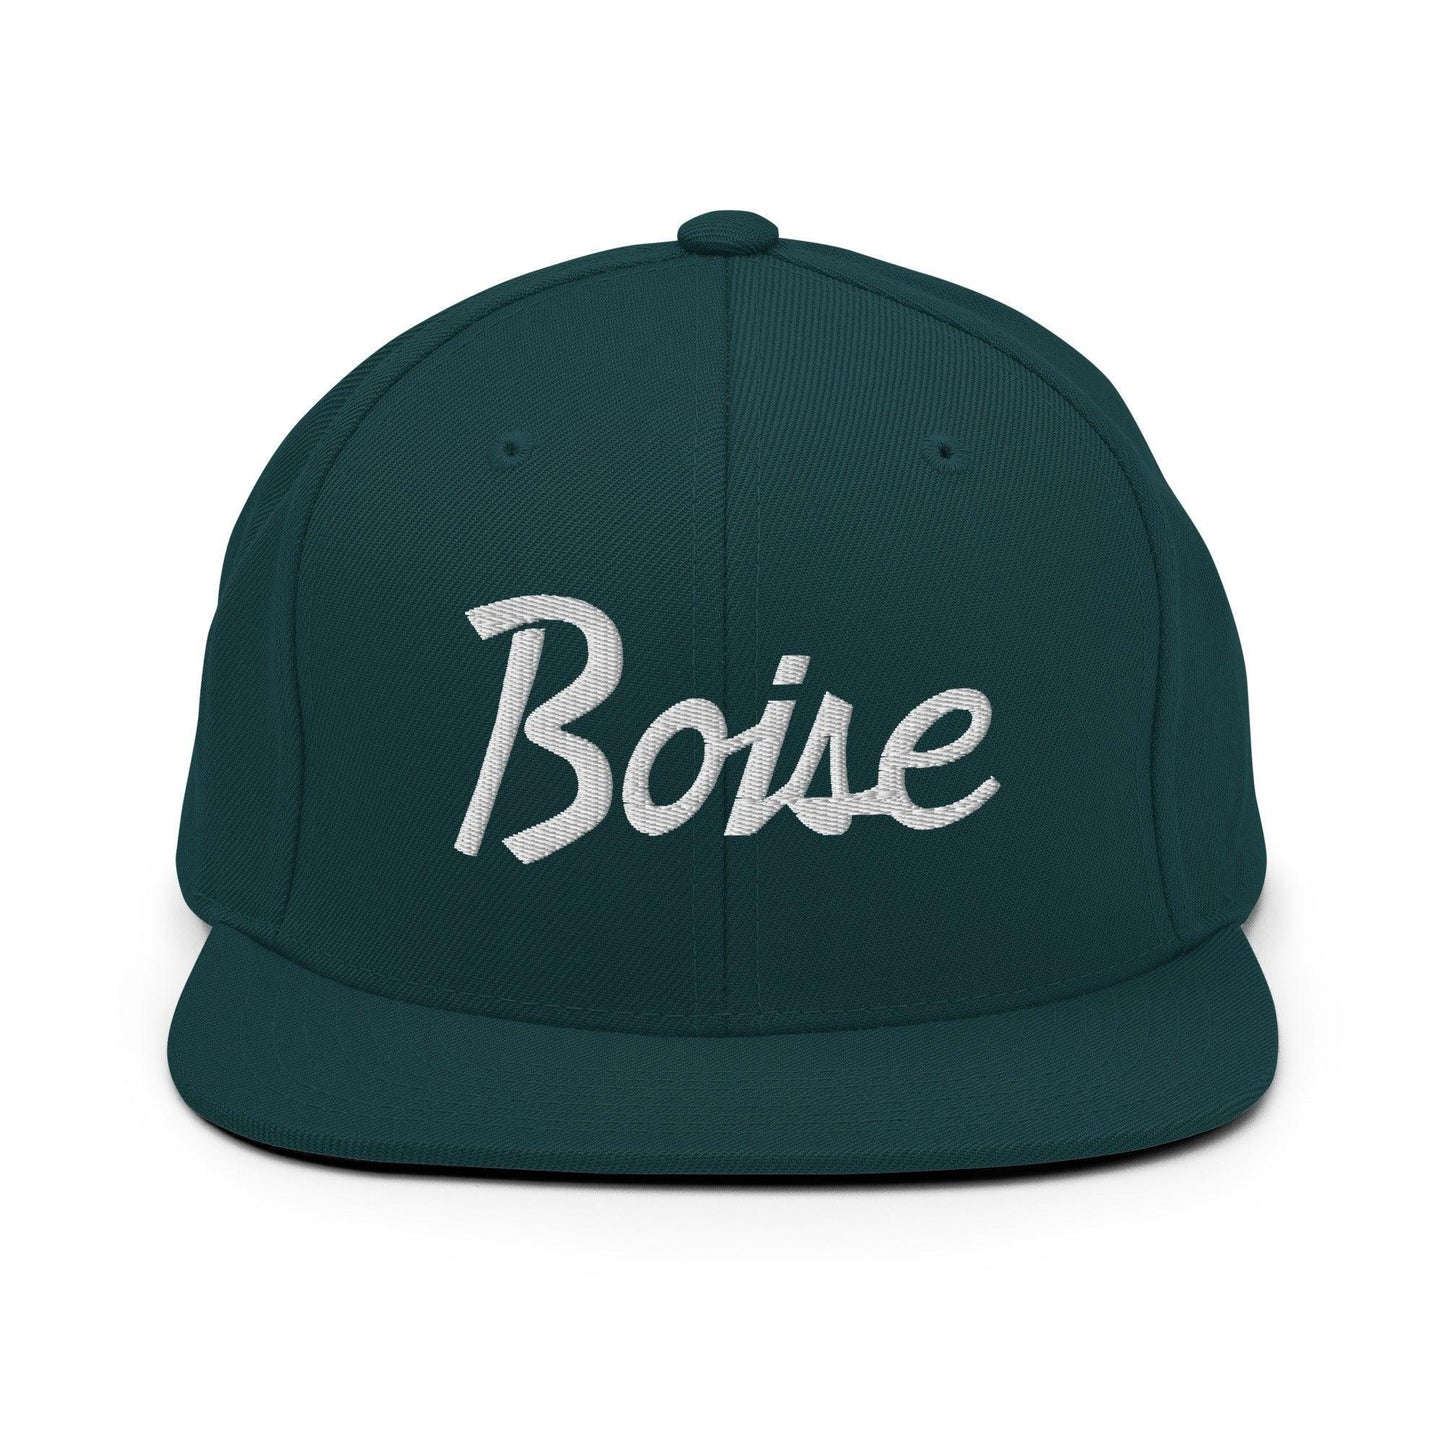 Boise Script Snapback Hat Spruce